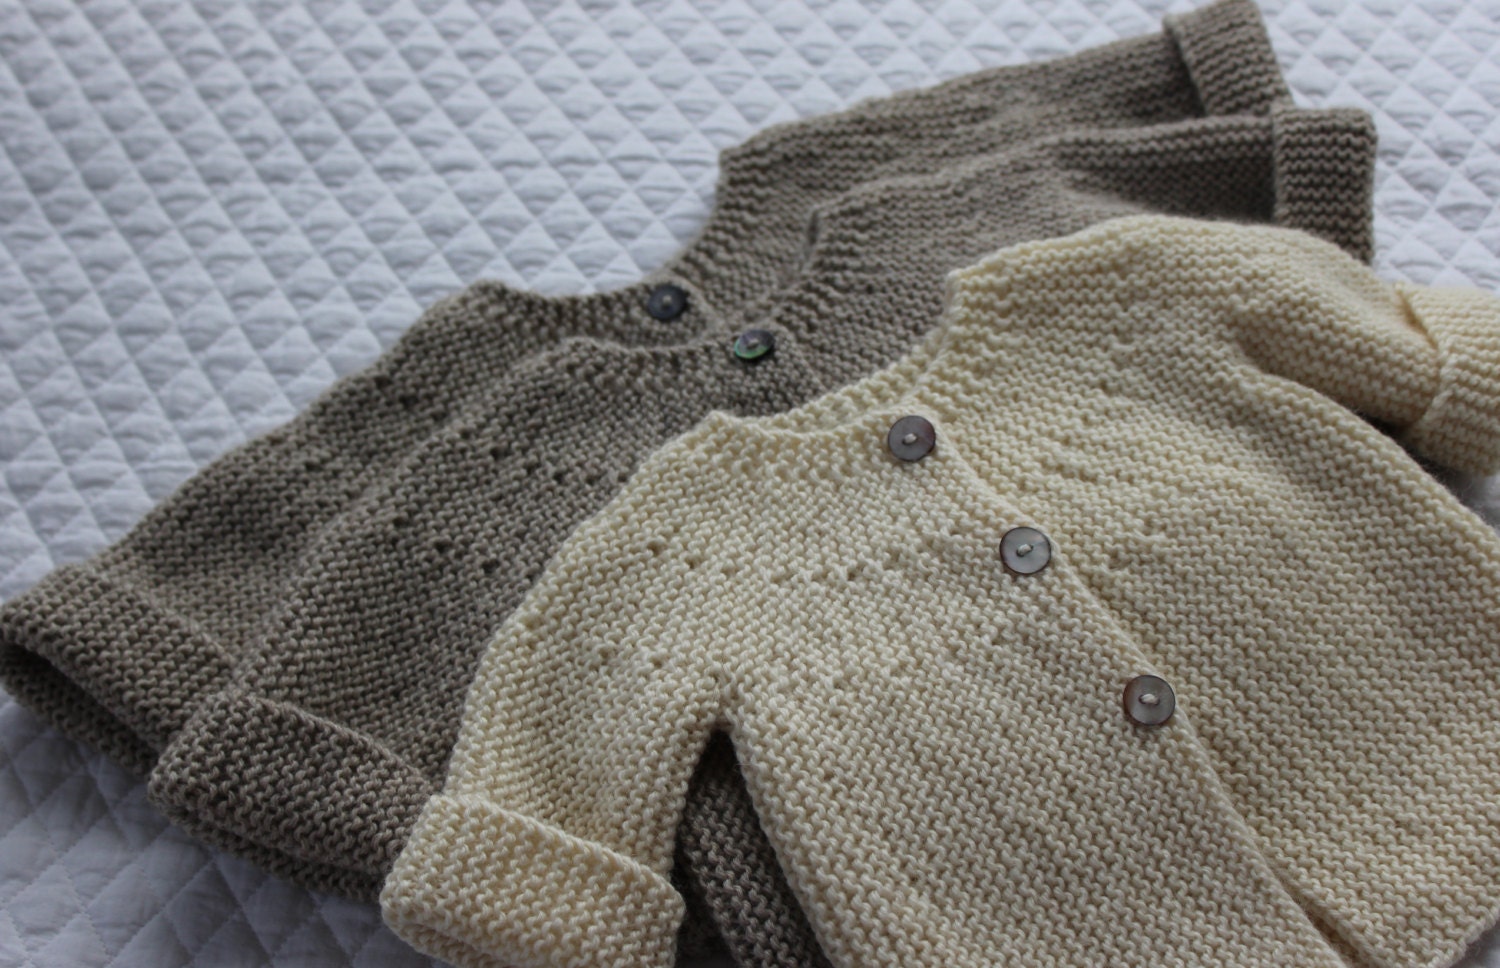 Bebeknits Modern European Baby Cardigan Knitting Pattern | Etsy